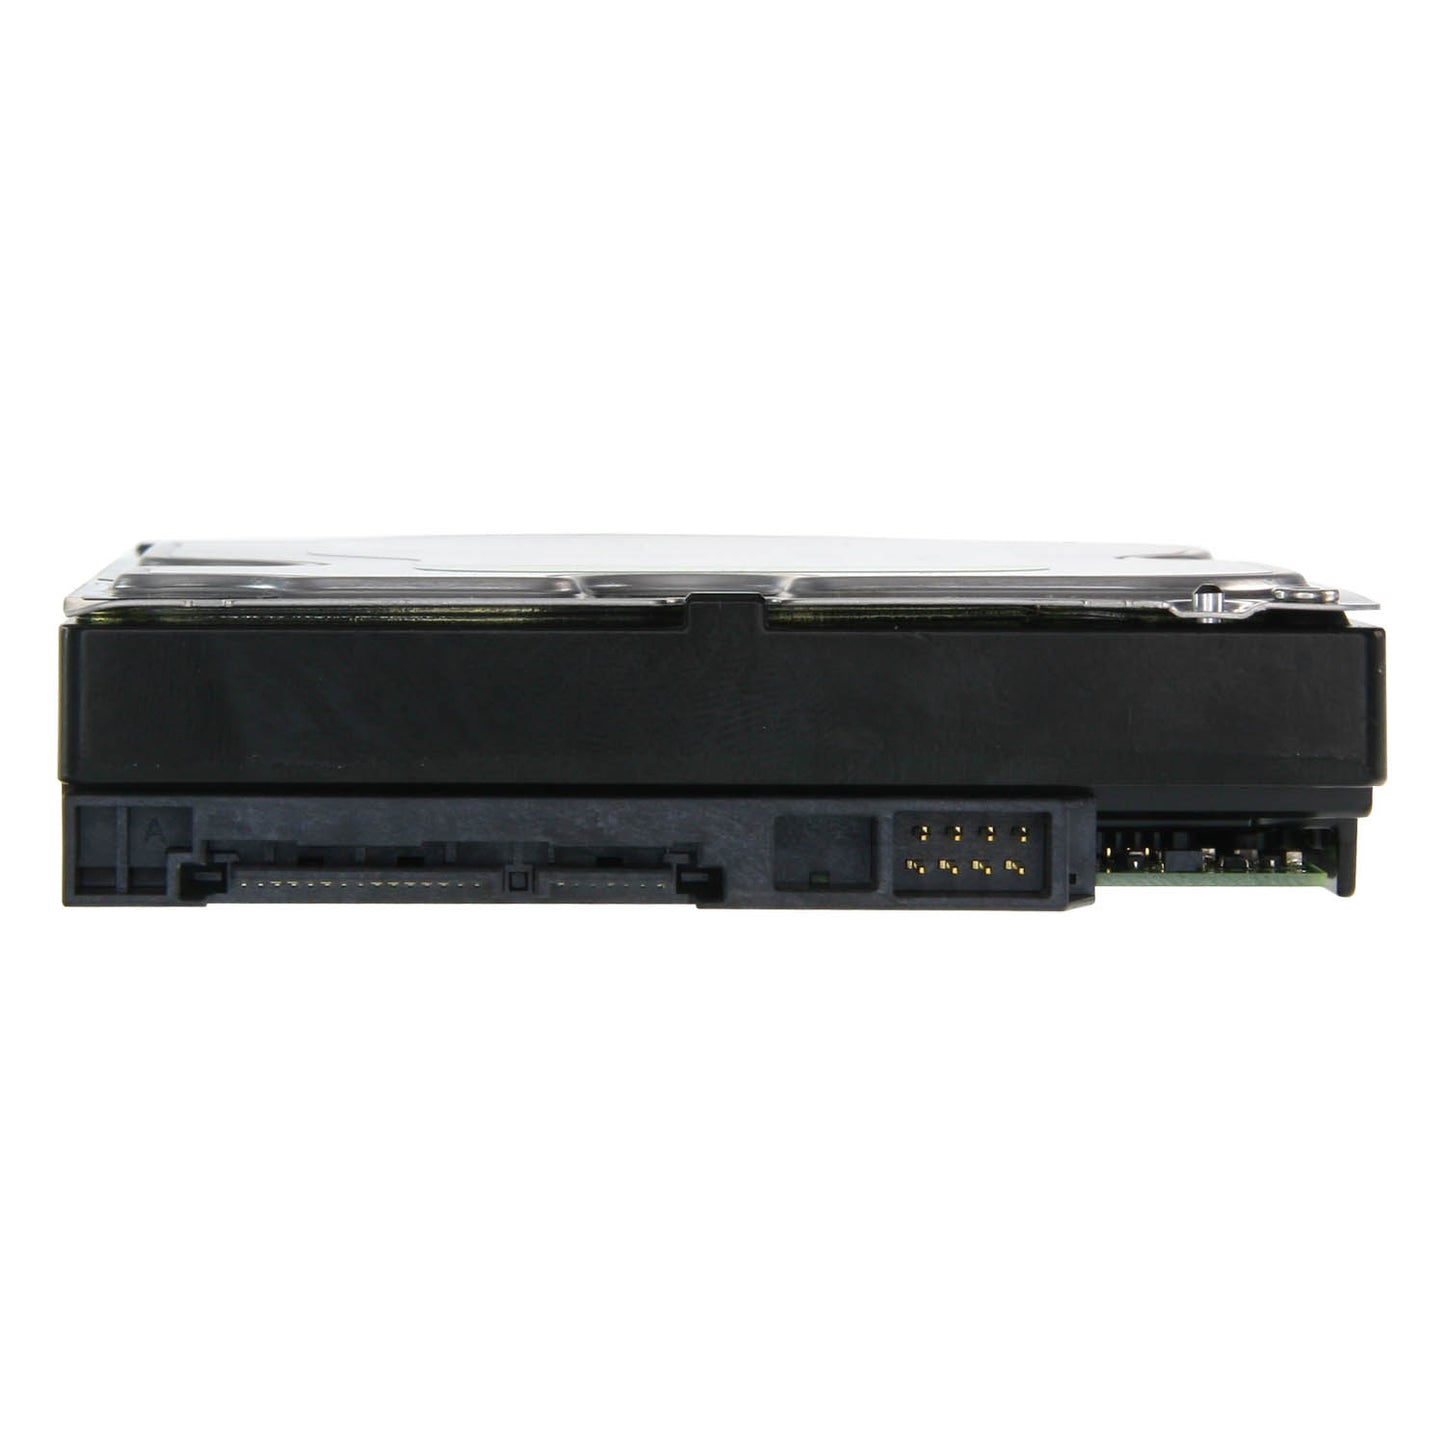 Hard Disk Western Digital - Capacità 8 TB - Interfaccia SATA 6 GB/s - Modello WD80PURX - Speciale per Videoregistratori - Da solo o installato su DVR